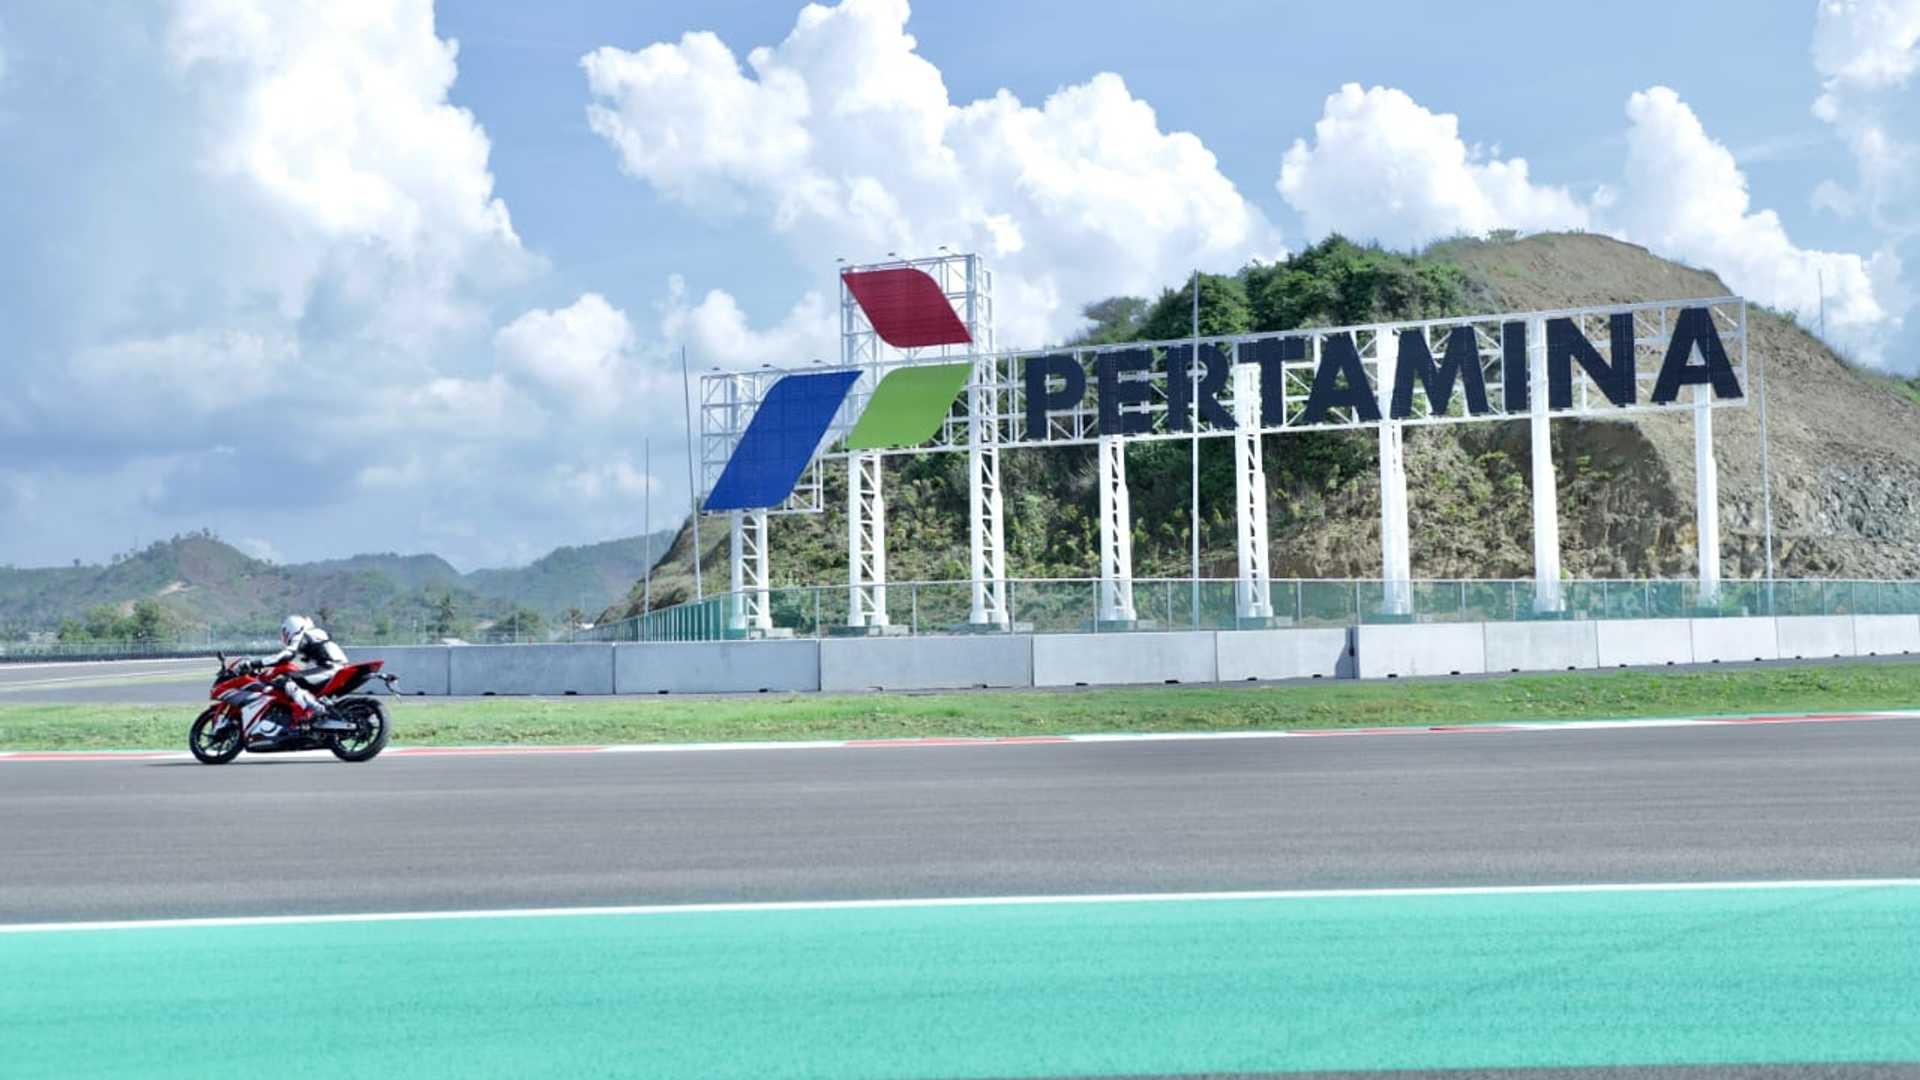 Pertamina jadi sponsor utama Pertamina Grand Prix Indonesia. (Foto: Istimewa)